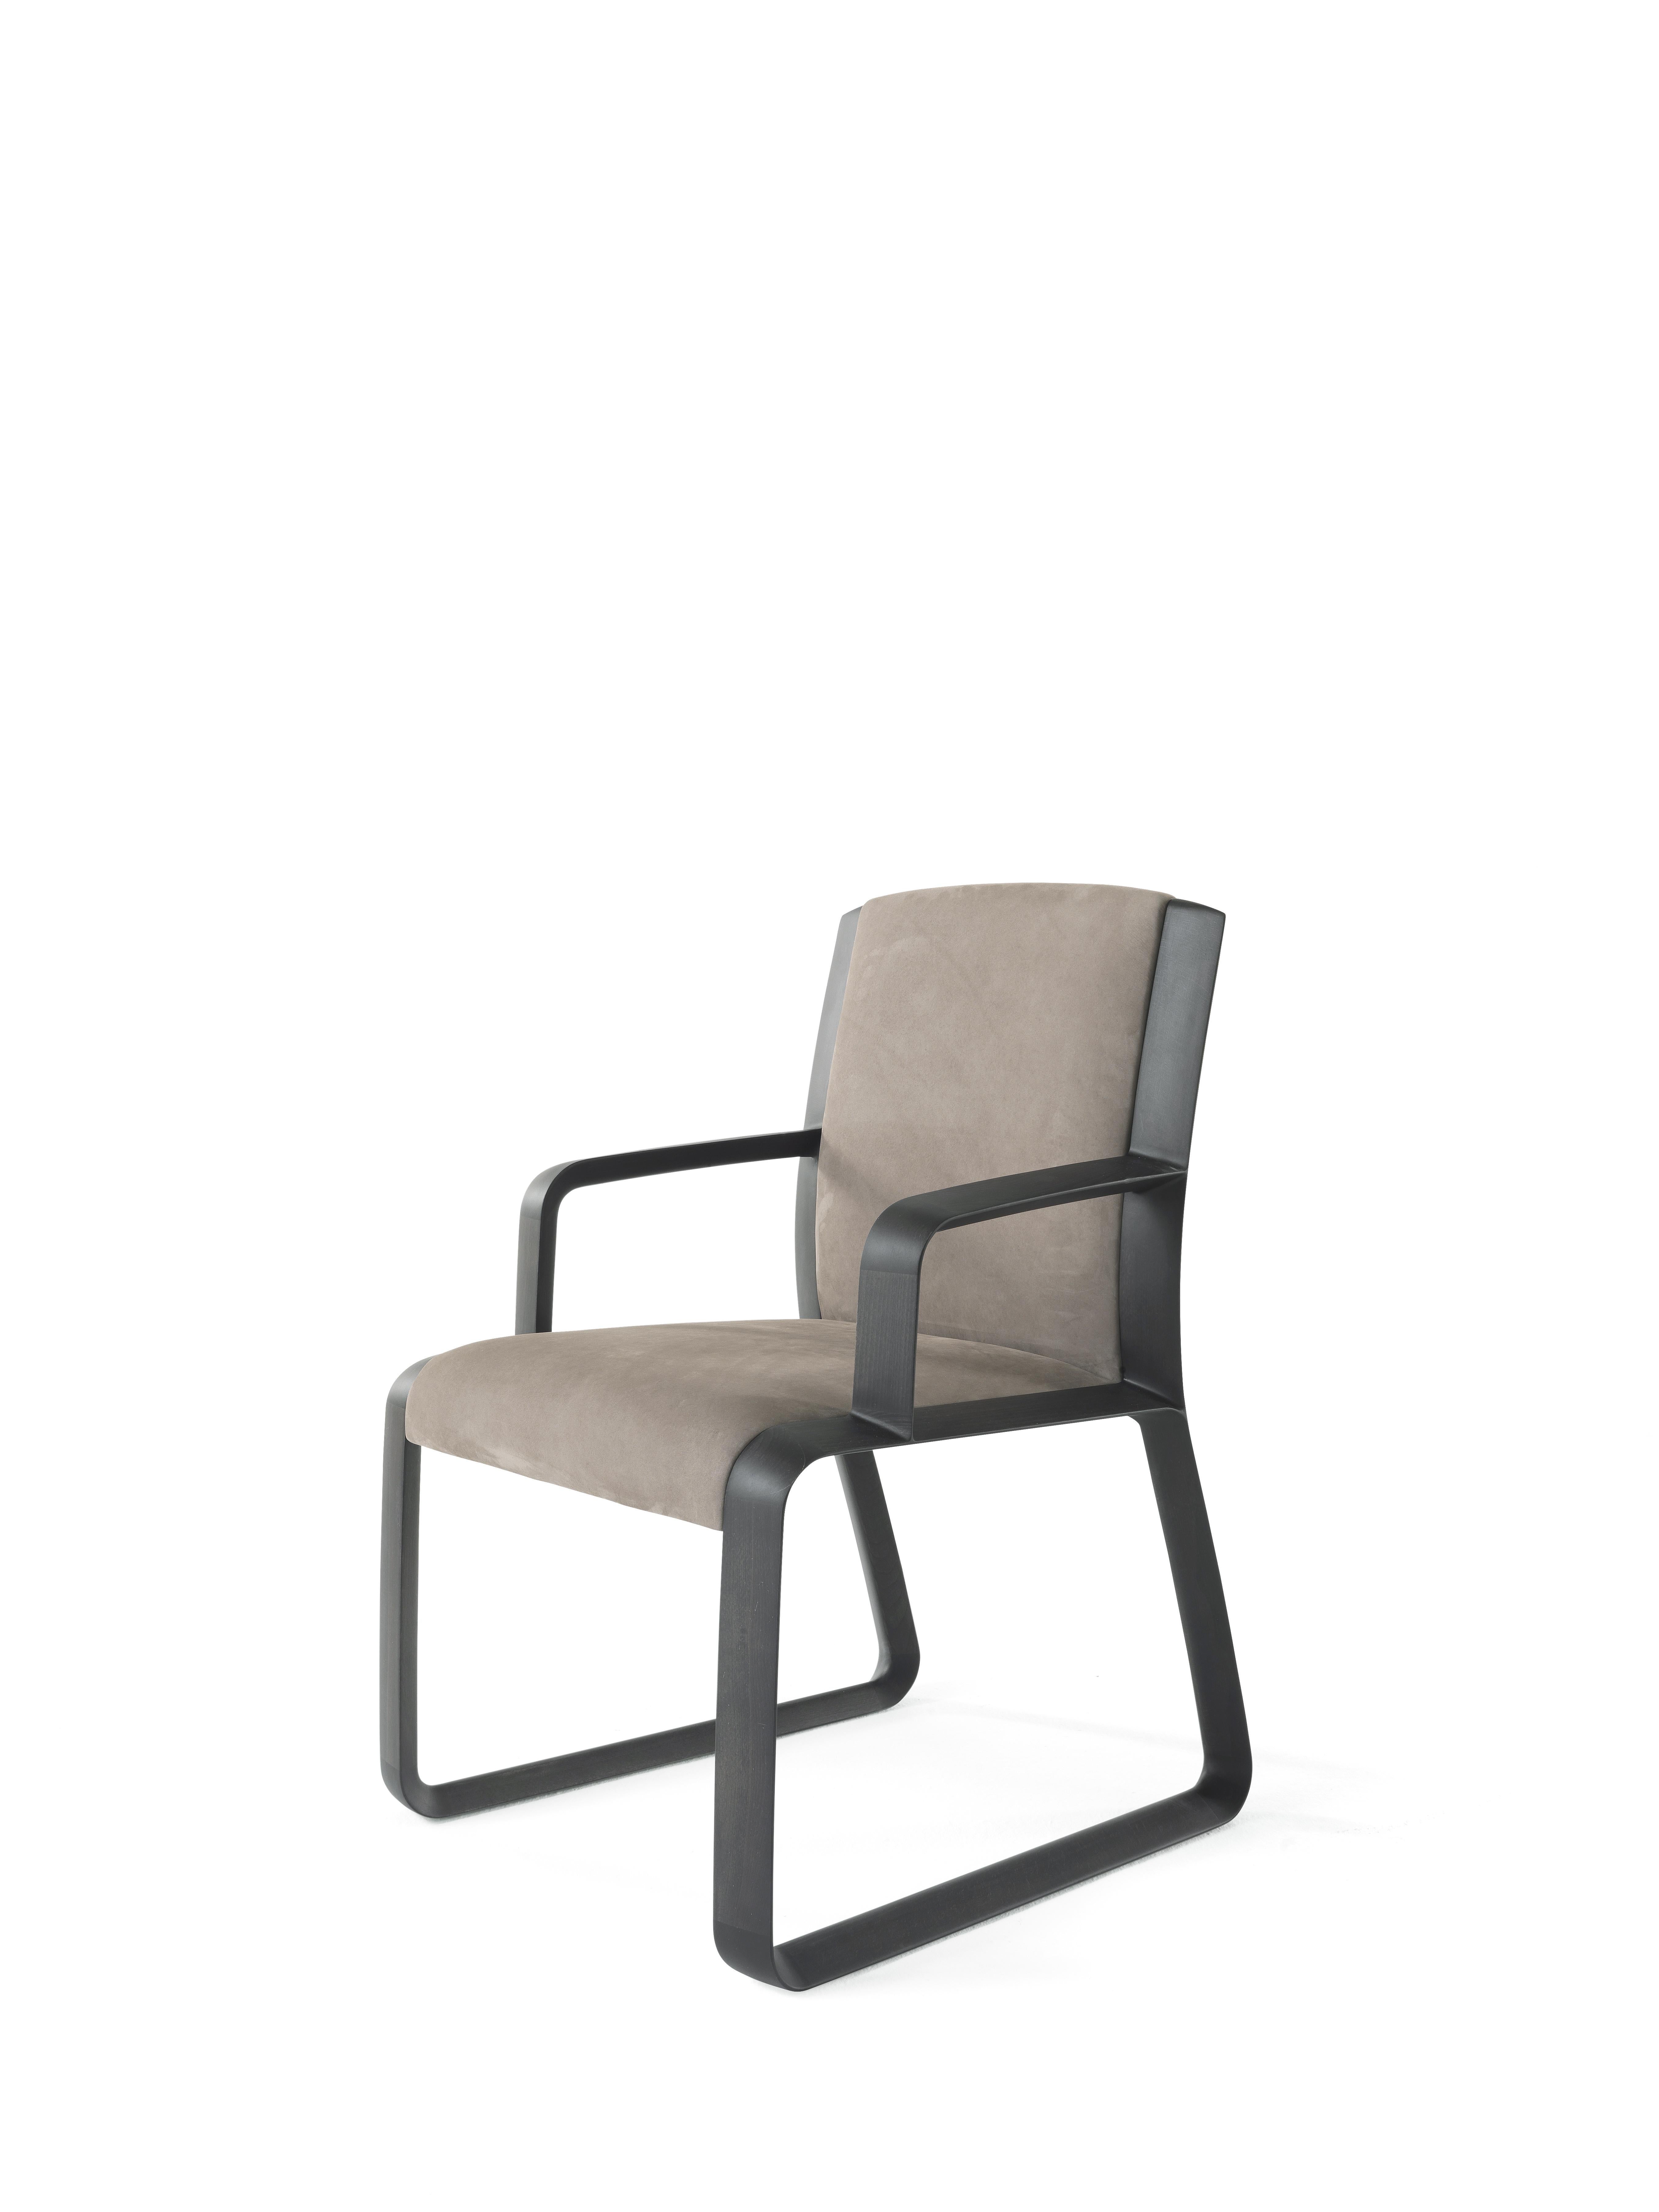 Eine minimalistische Ästhetik und ein bequemer Sitz werden durch die sinnliche Nubuk-Polsterung des Wynwood-Stuhls unterstrichen. Höhe, Größe und Design sind so konzipiert, dass sie raffinierte, aber schlichte Schreibtische oder Esstische